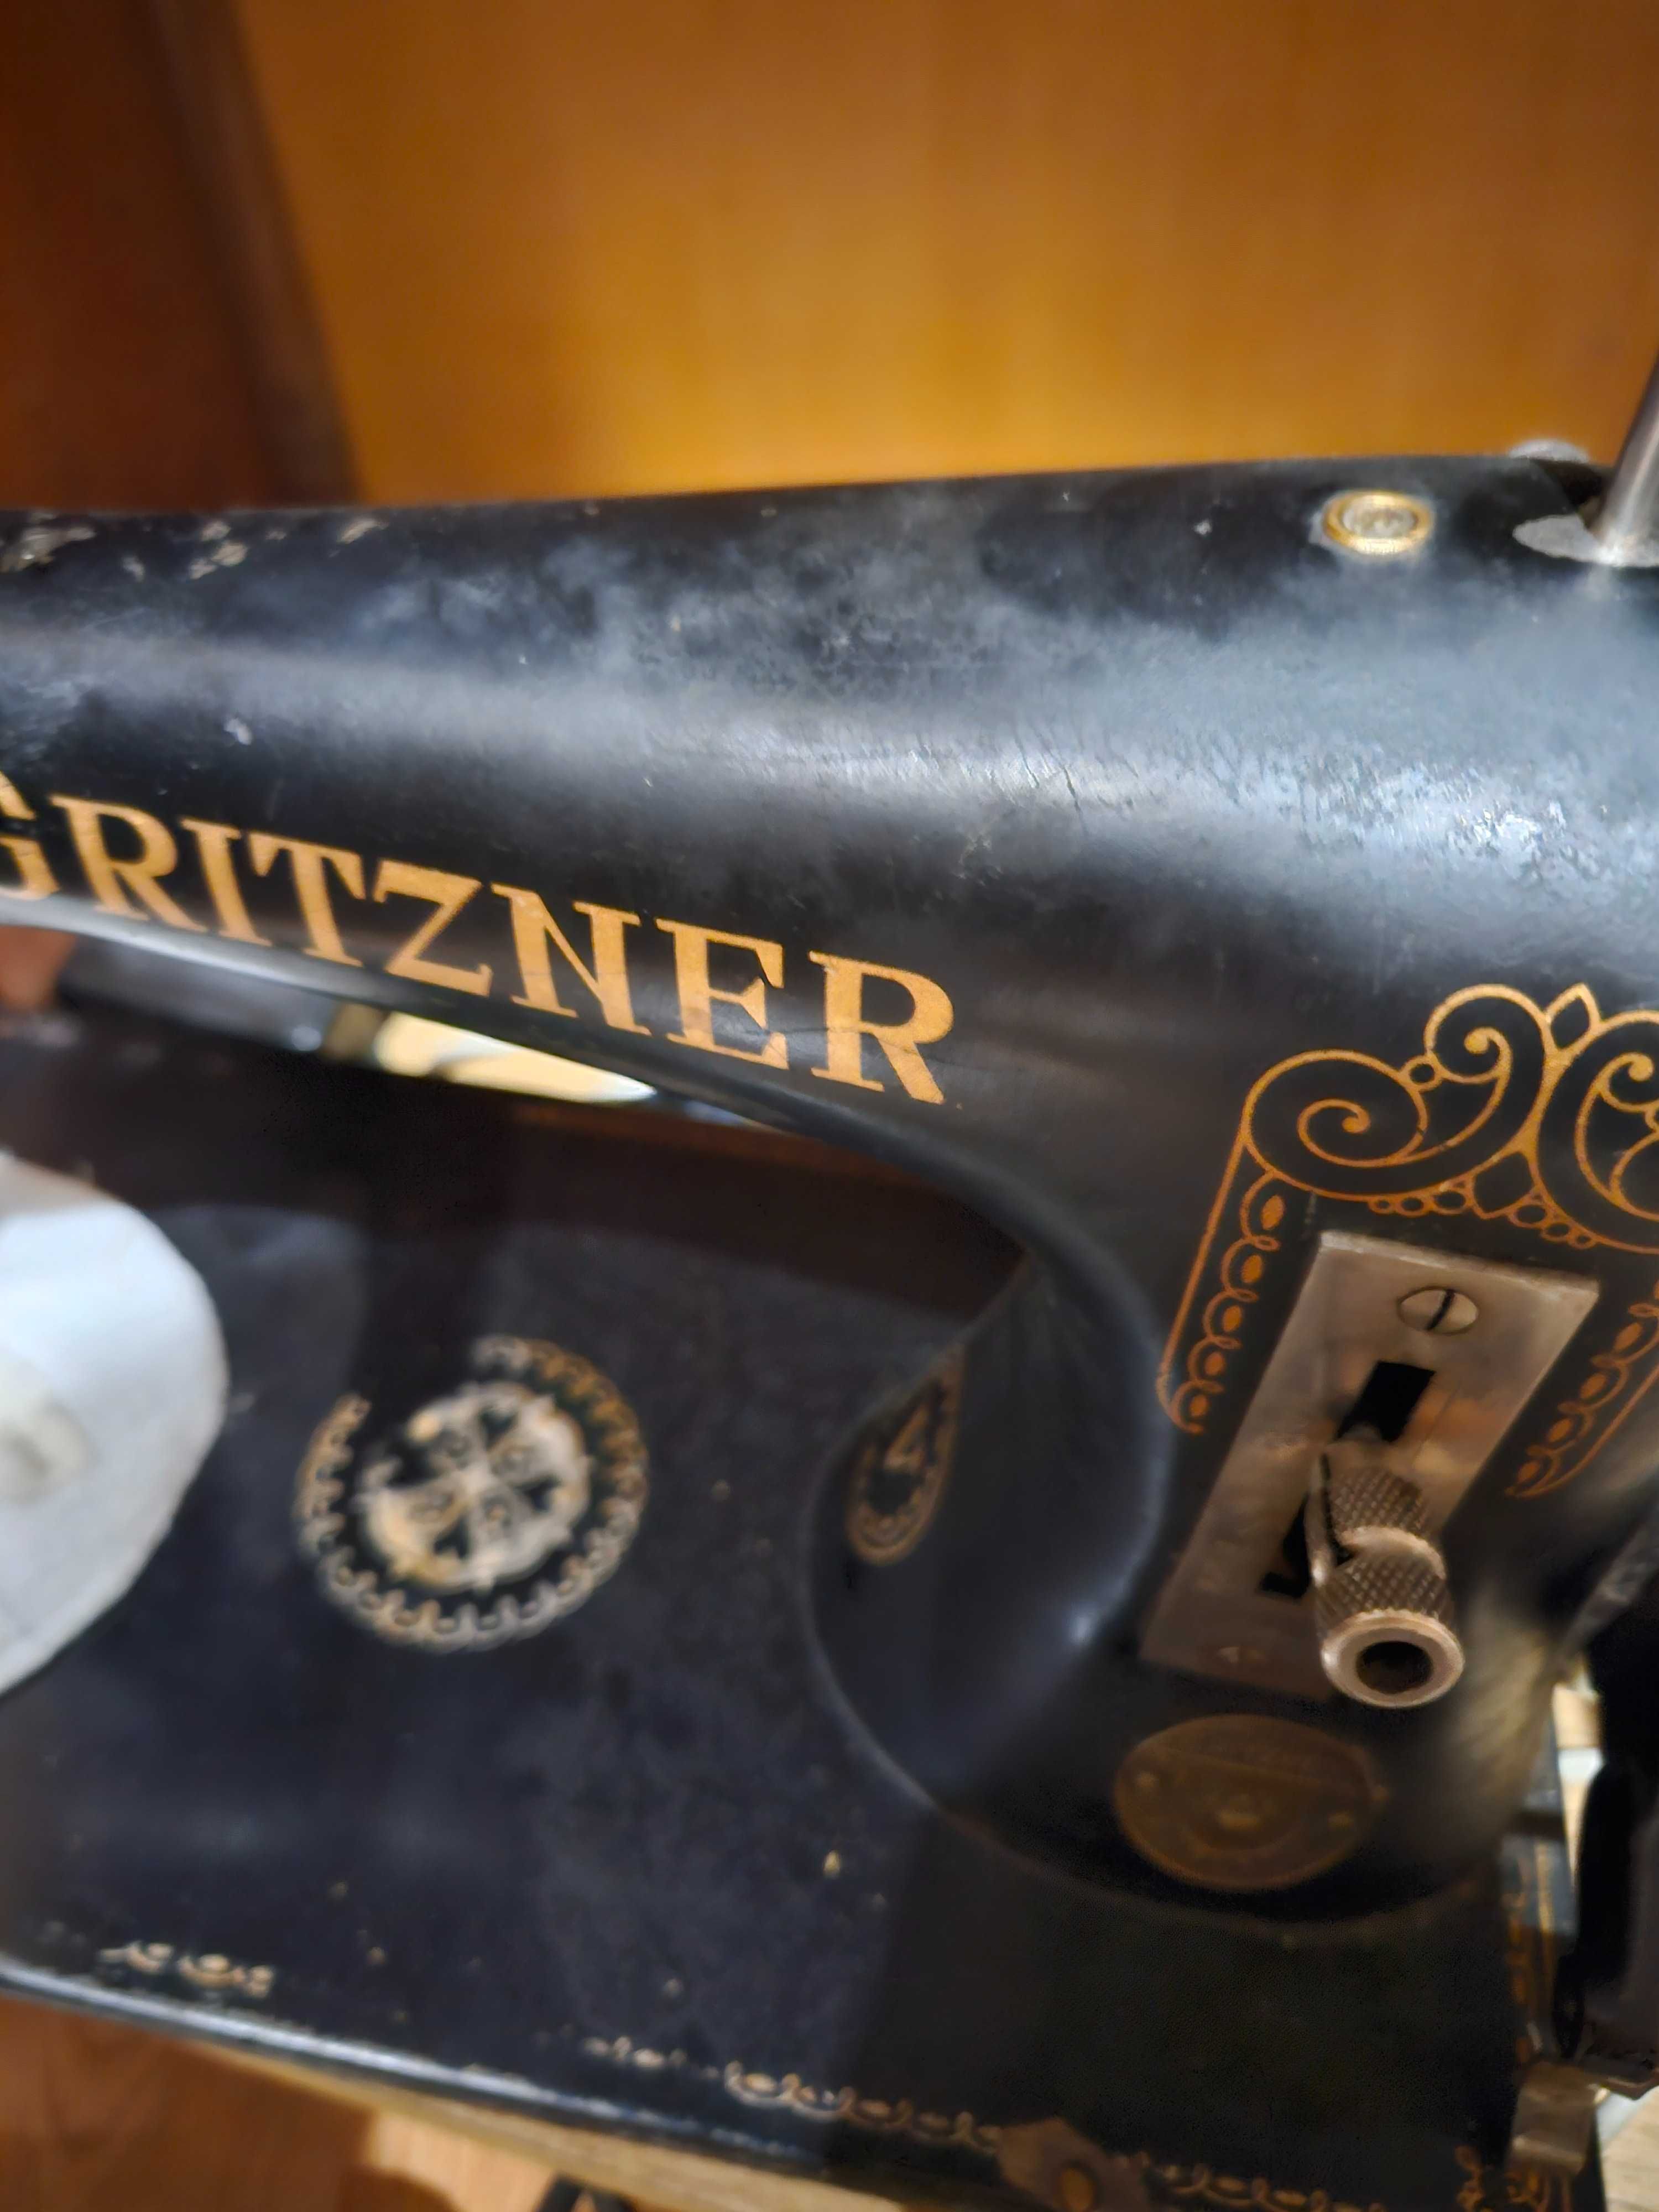 Maszyna do szycia Gritzner Siedlce